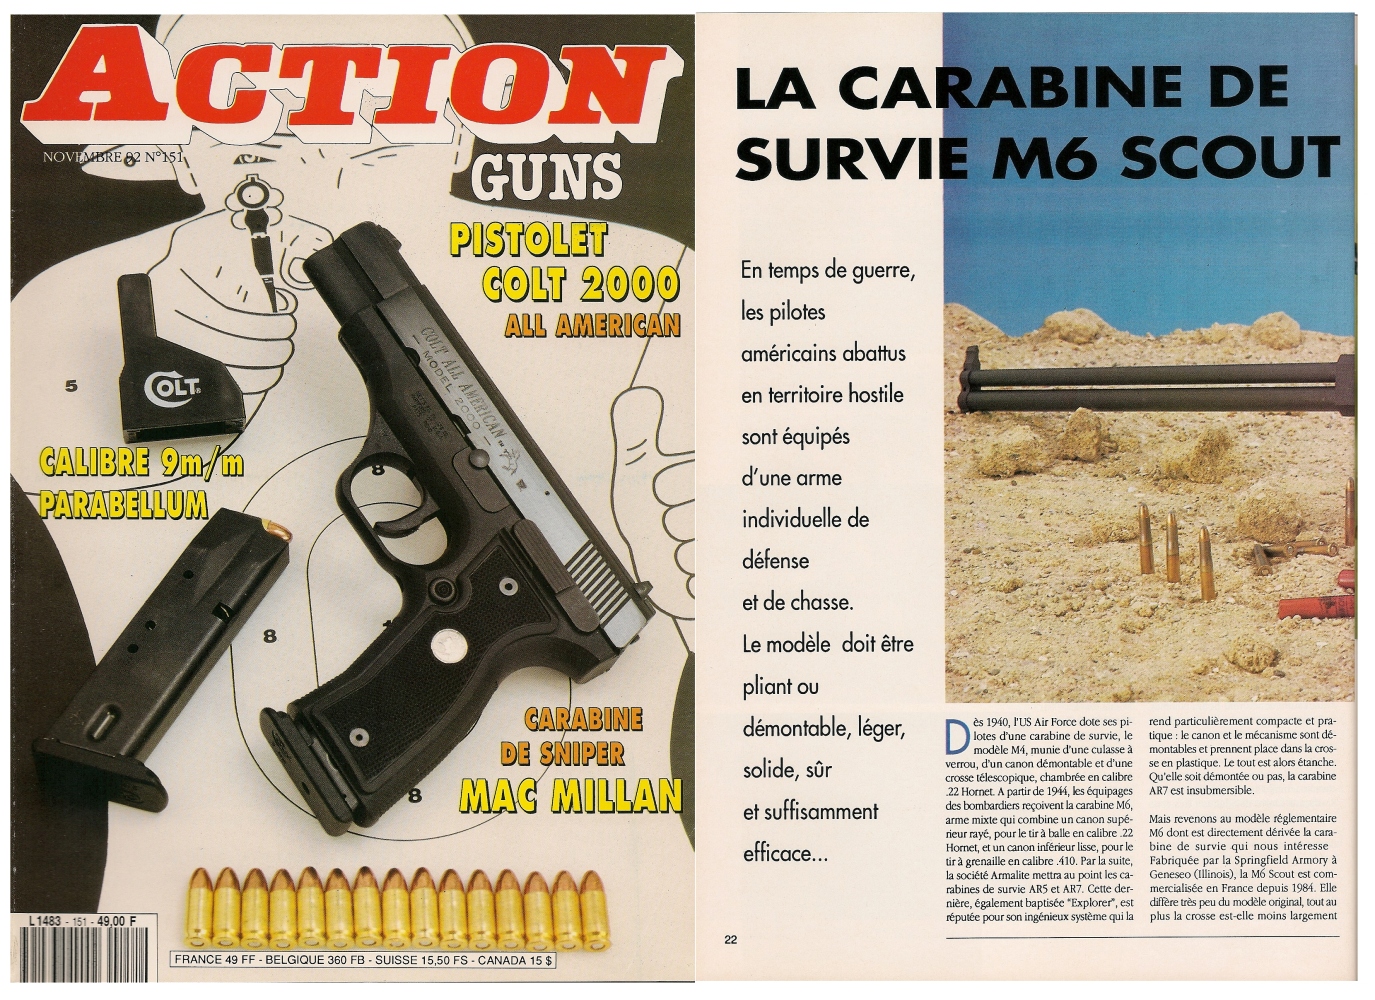 Le banc d’essai de la carabine de survie M6 Scout a été publié sur 5 pages dans le magazine Action Guns n° 151 (novembre 1992). 